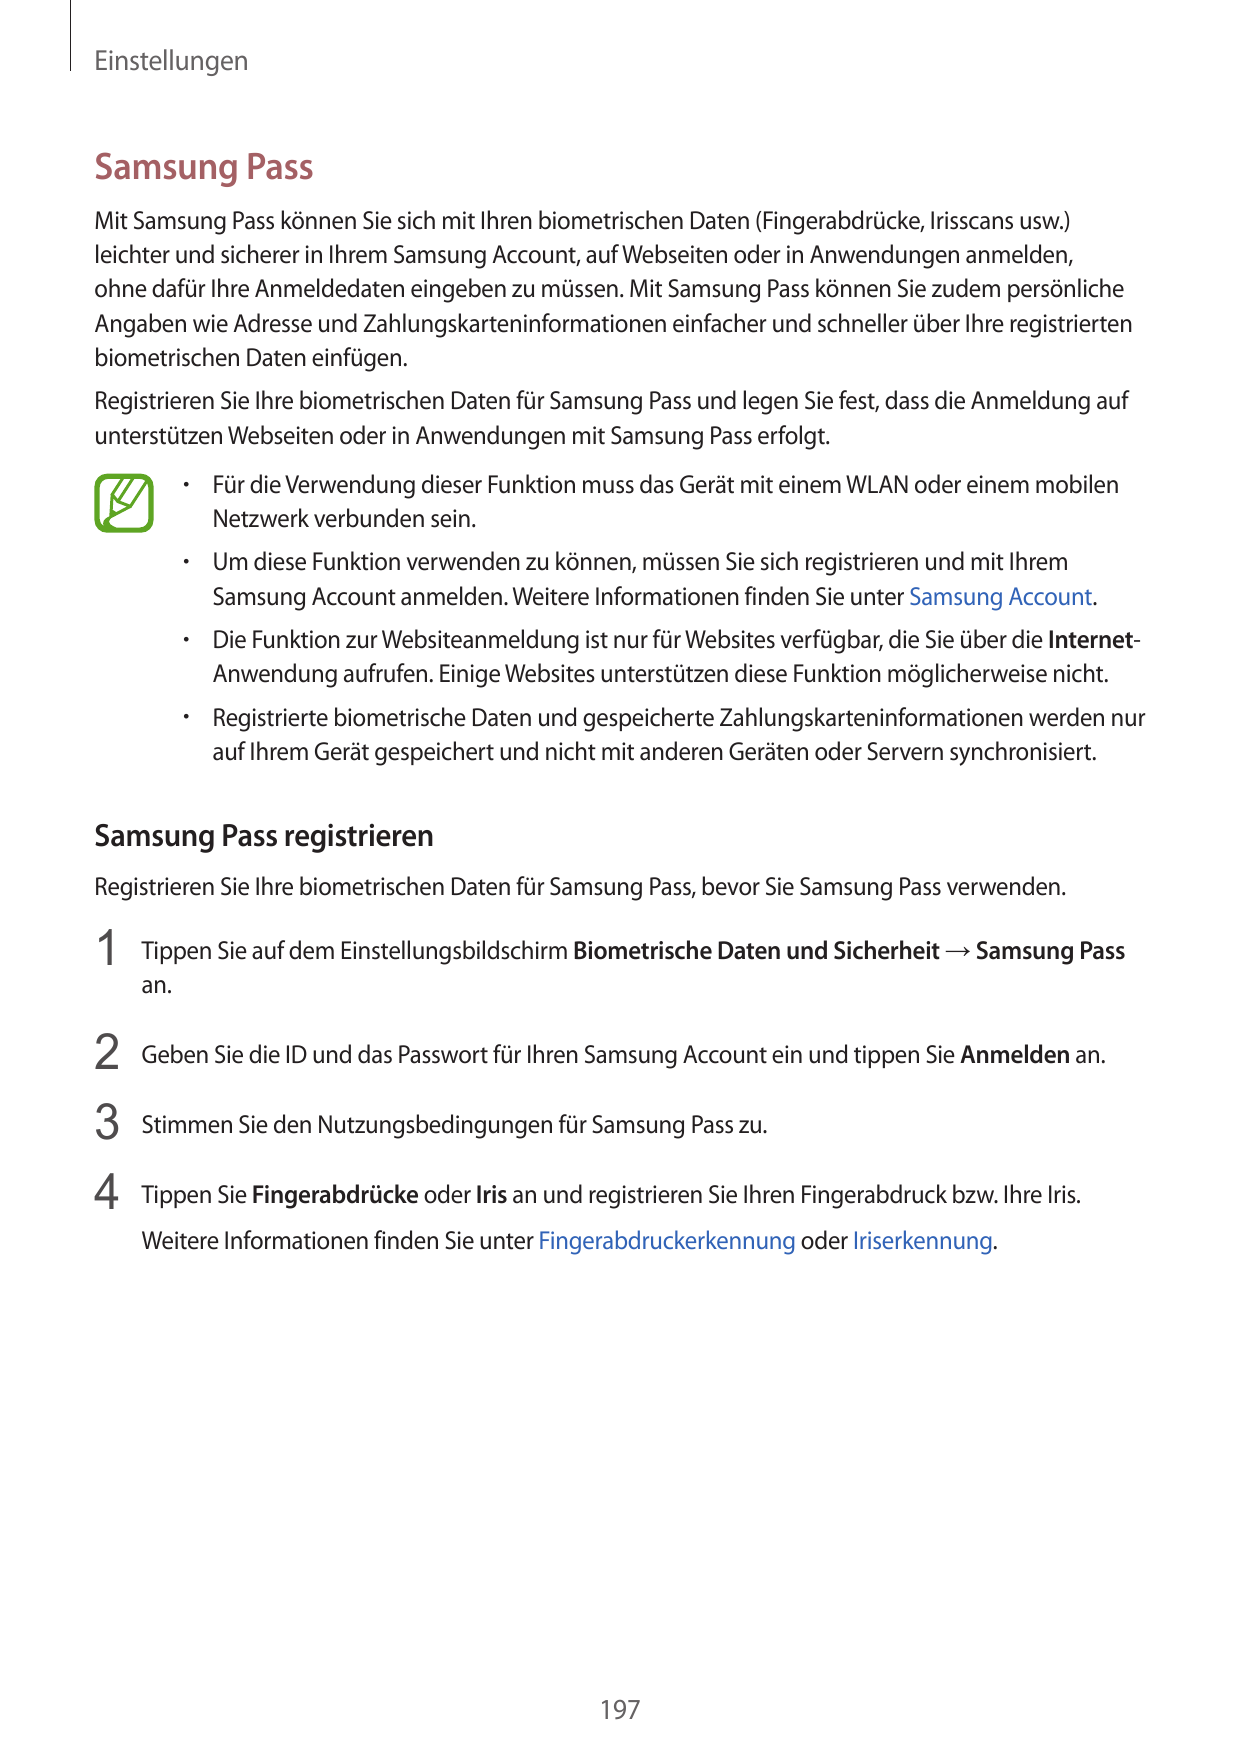 EinstellungenSamsung PassMit Samsung Pass können Sie sich mit Ihren biometrischen Daten (Fingerabdrücke, Irisscans usw.)leichter